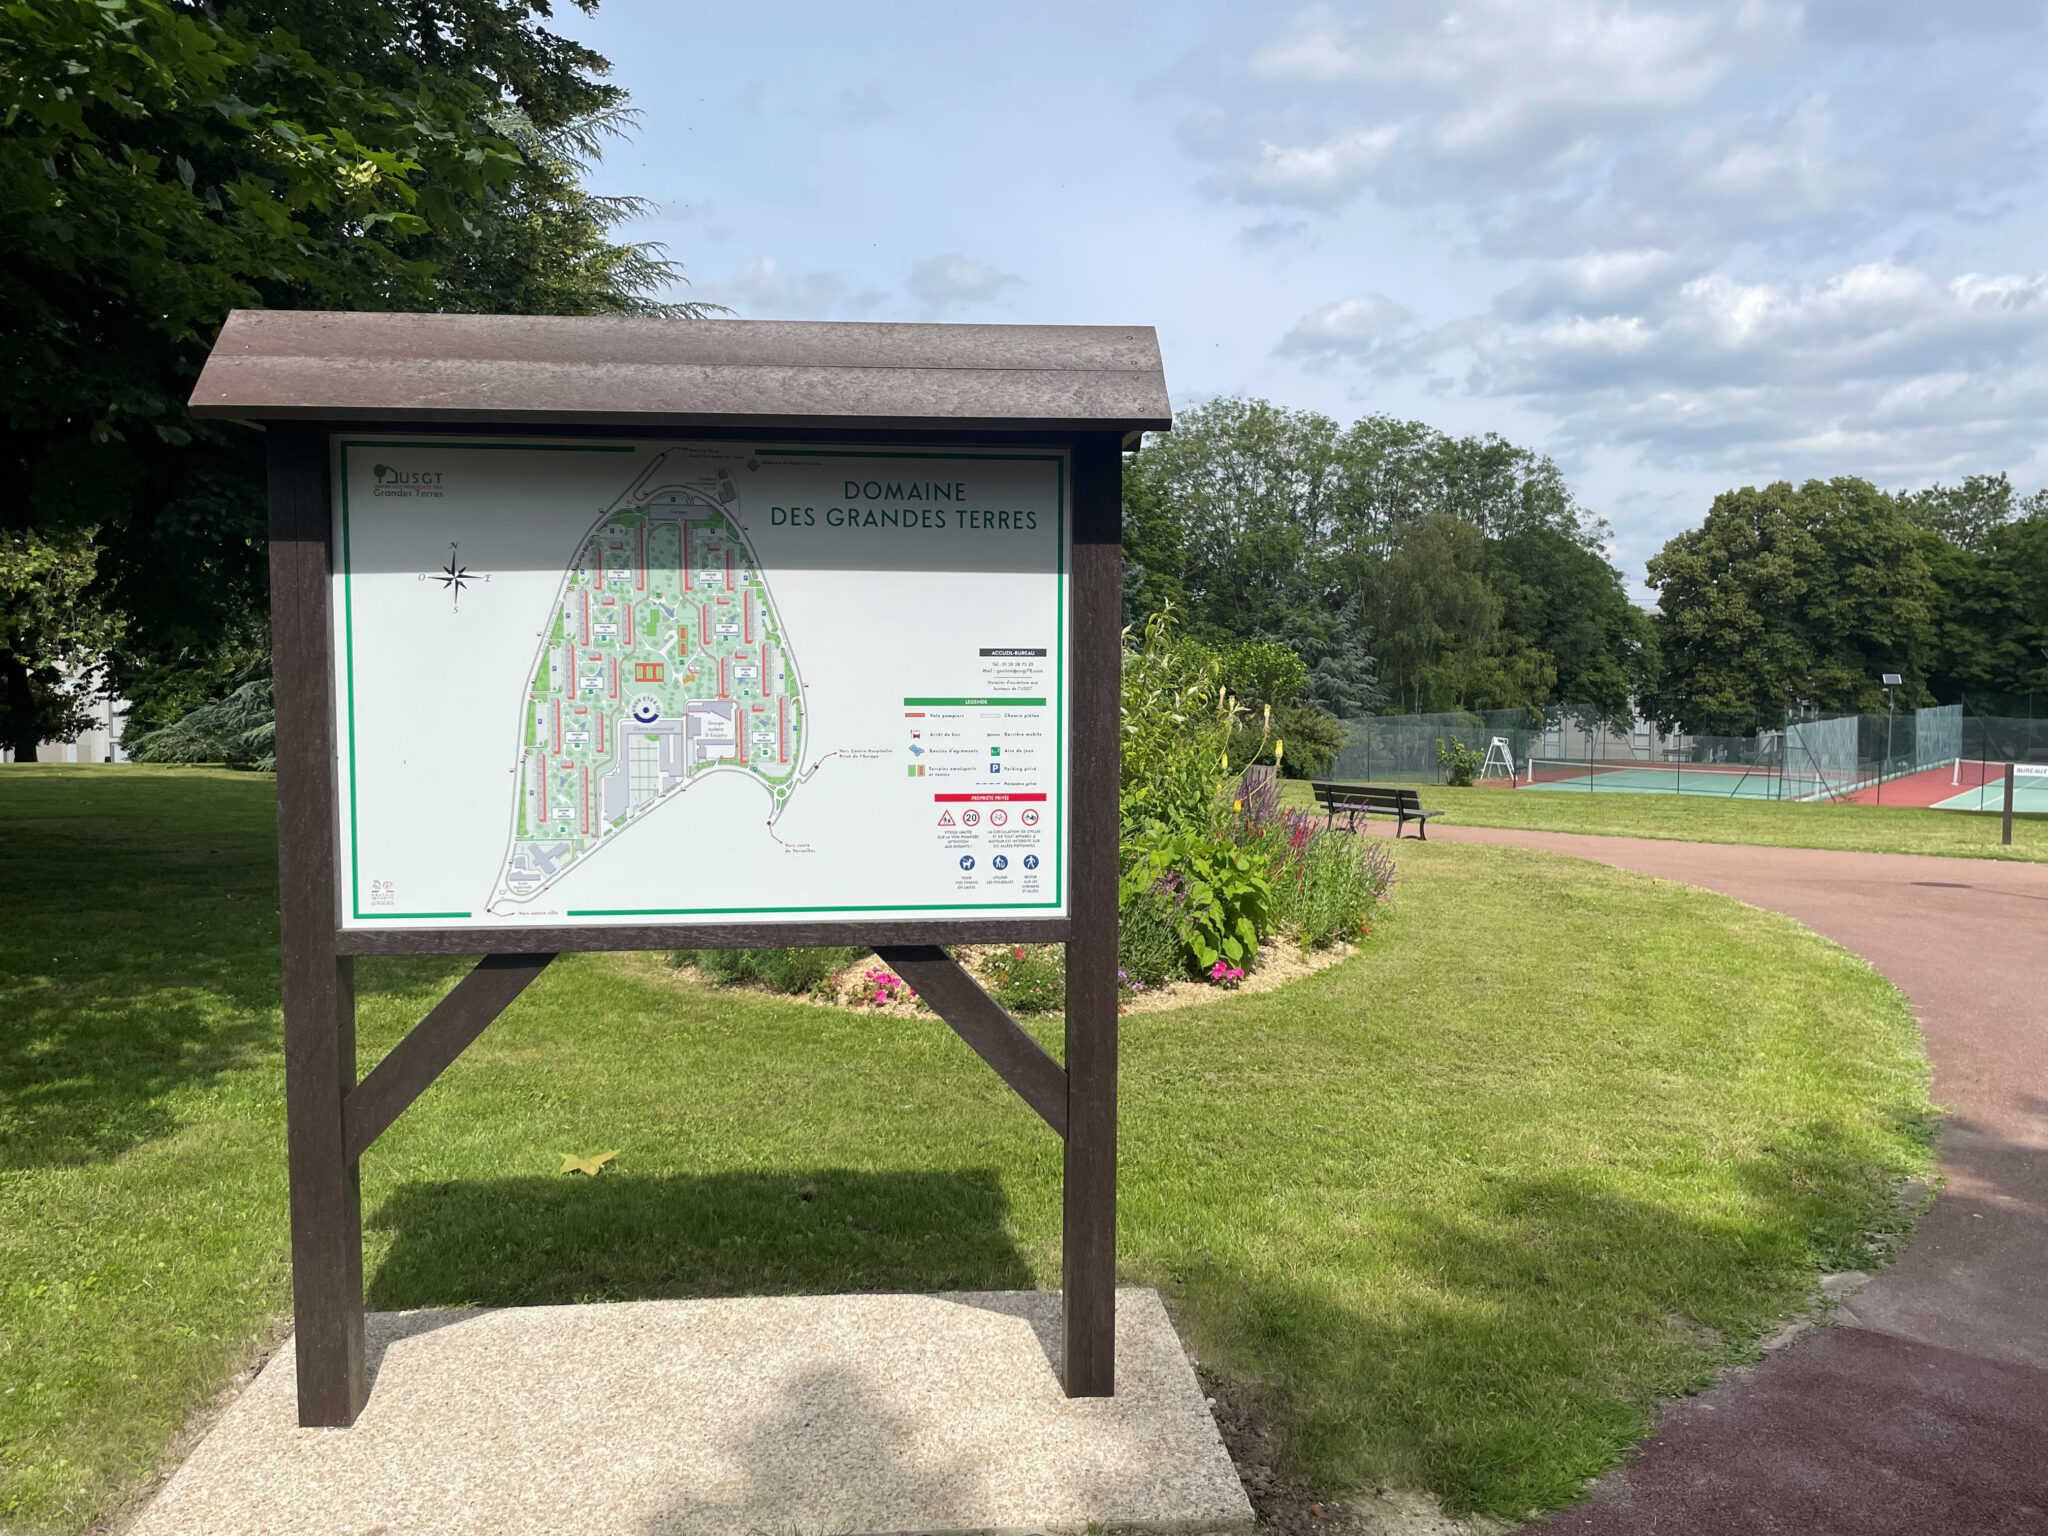 Panneau d'information dans parc avec carte et tennis.